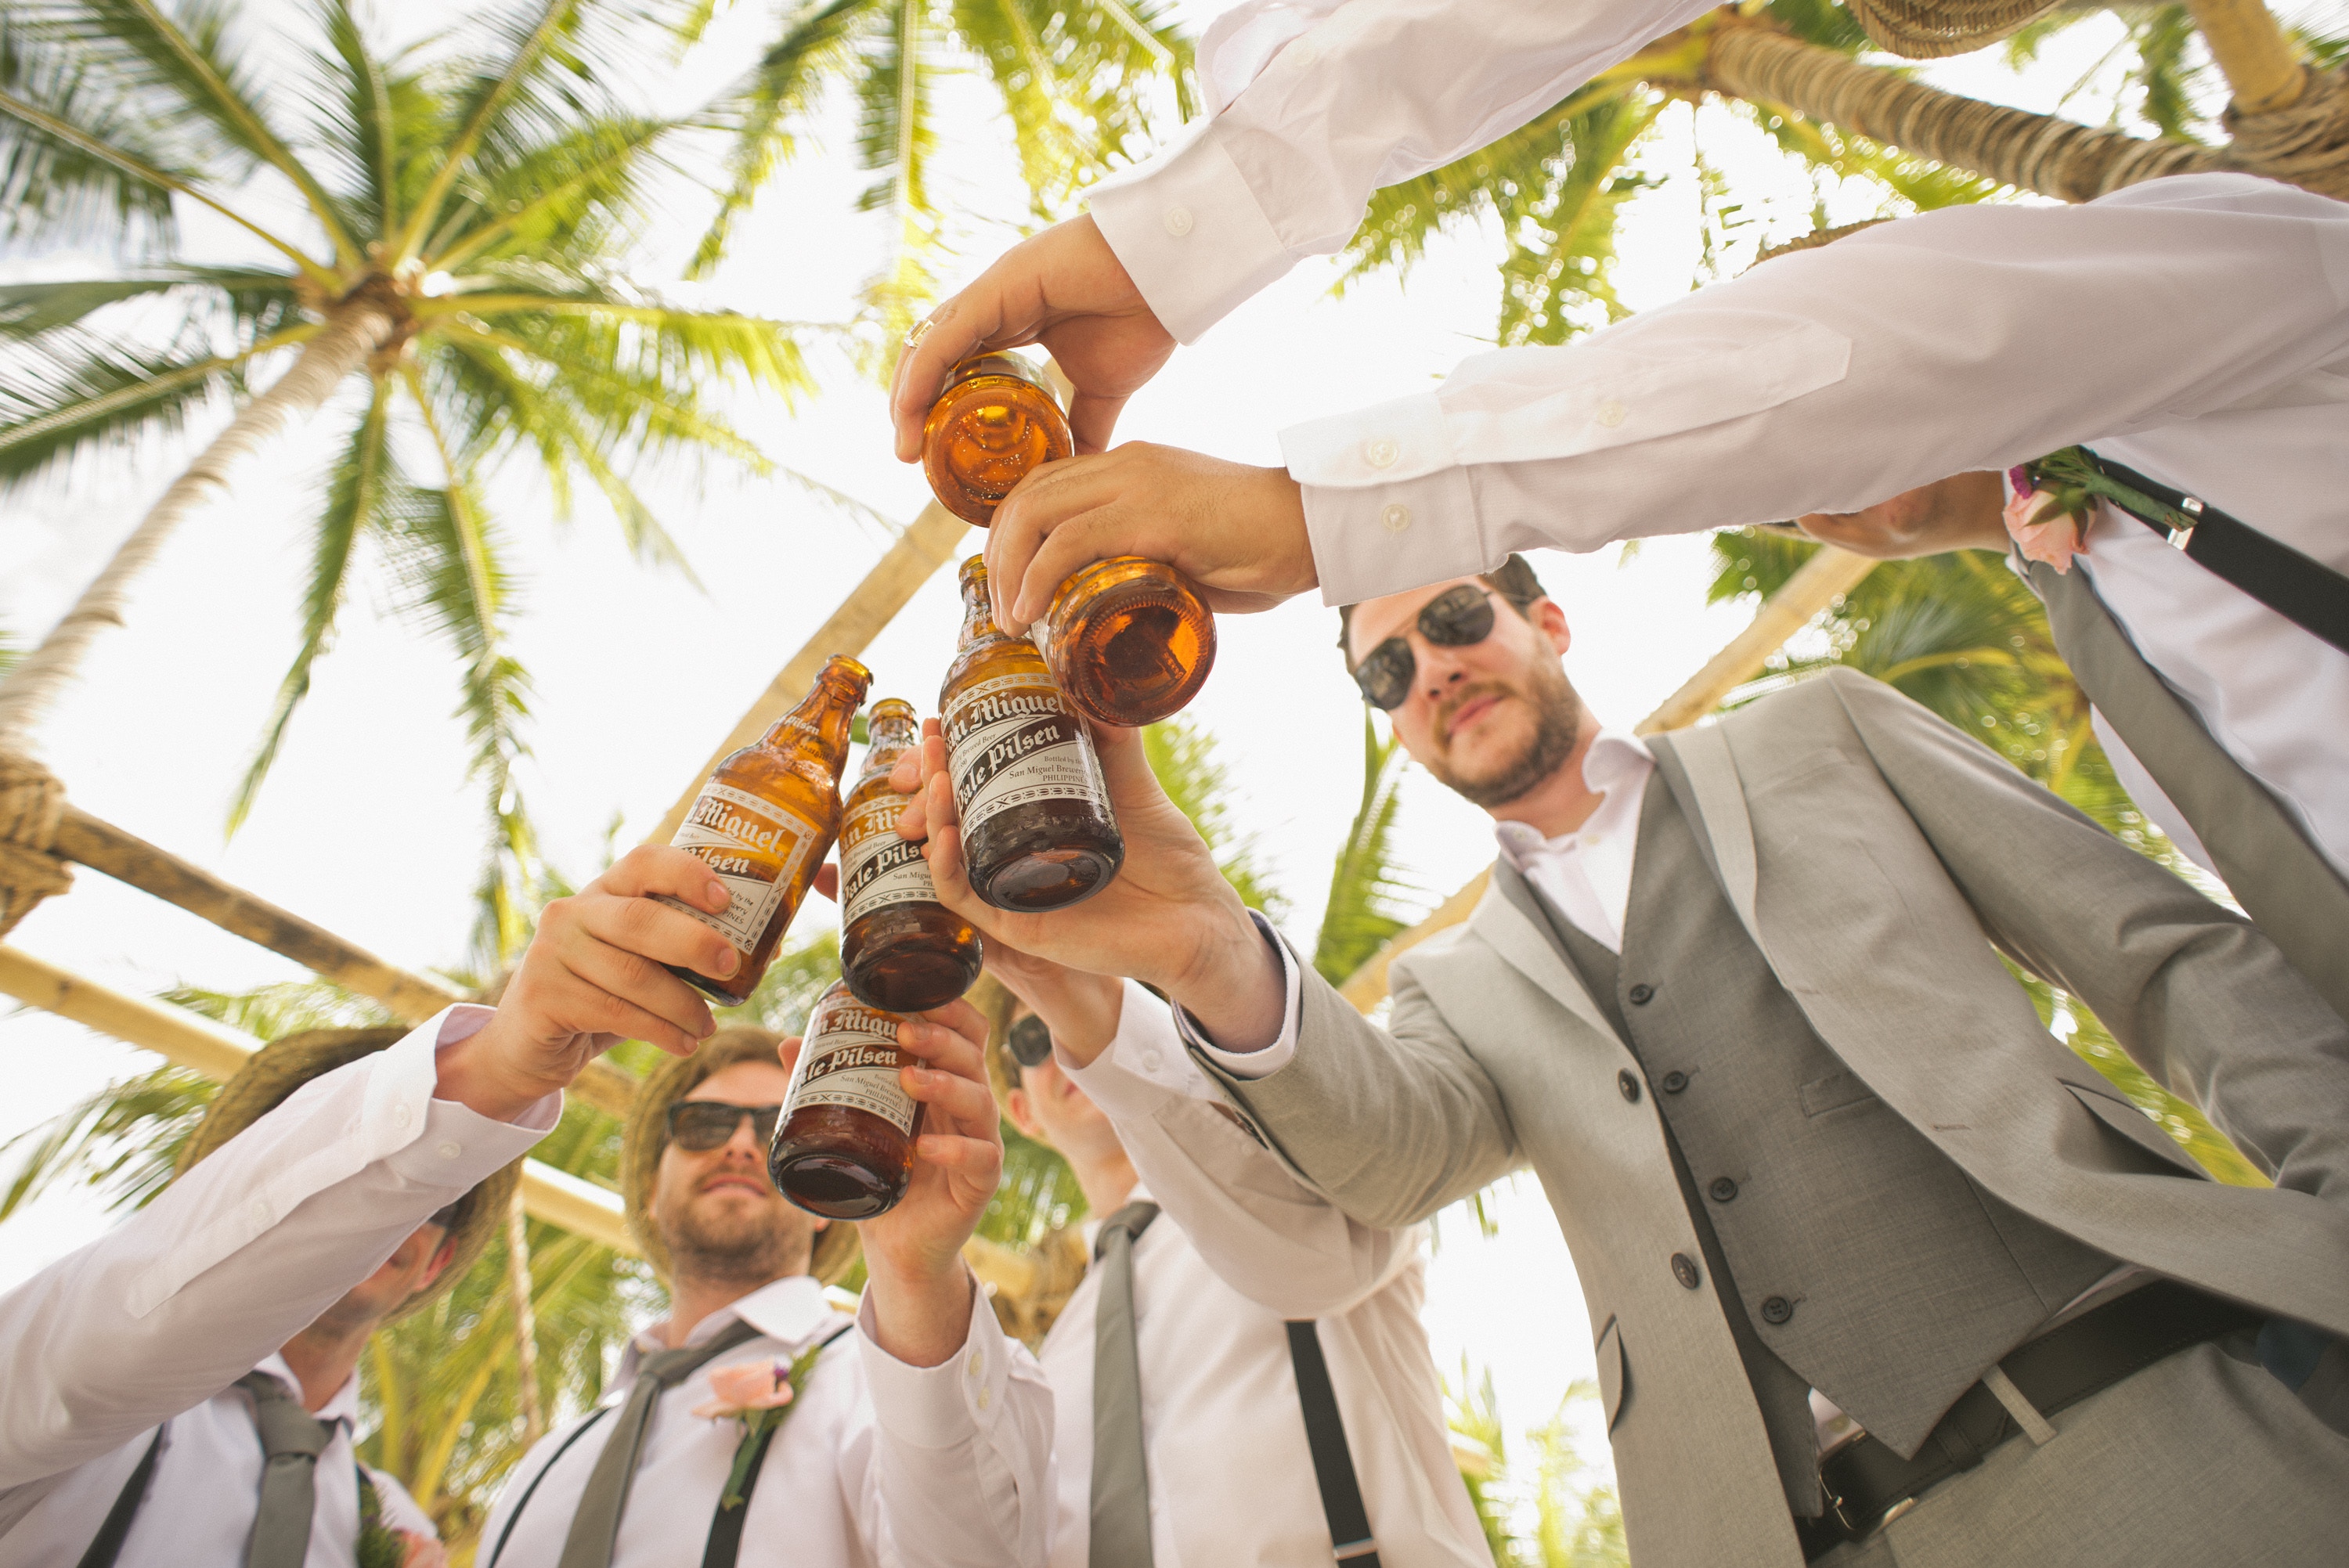 Group of men clinking beer bottles